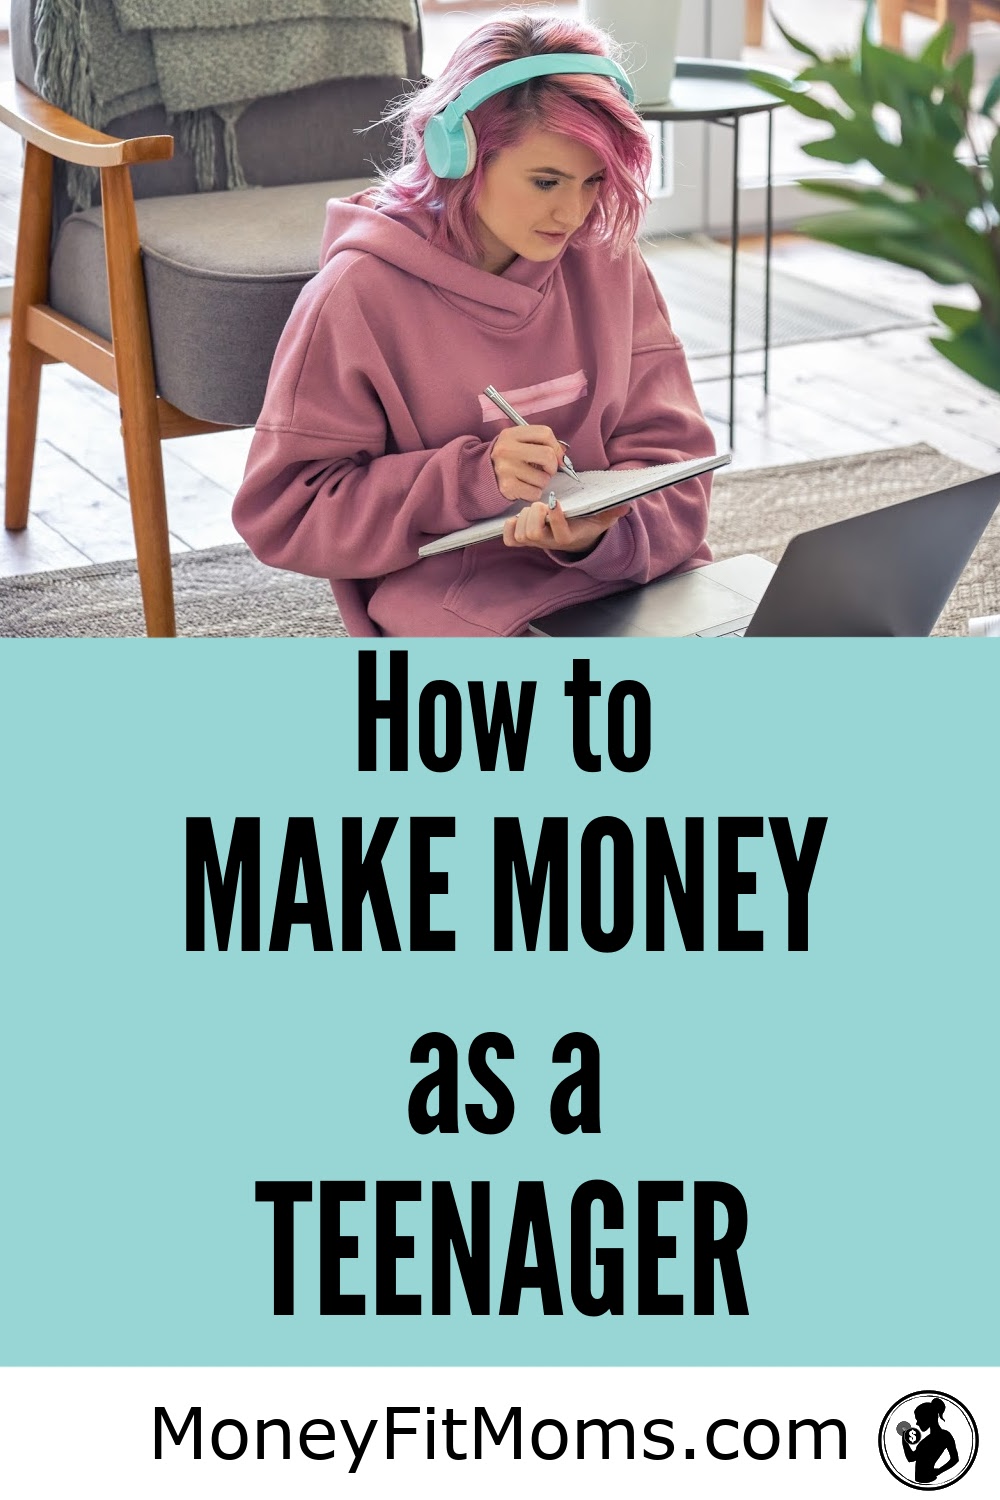 How to Make Money as a Teenager - MoneyFitMoms.com